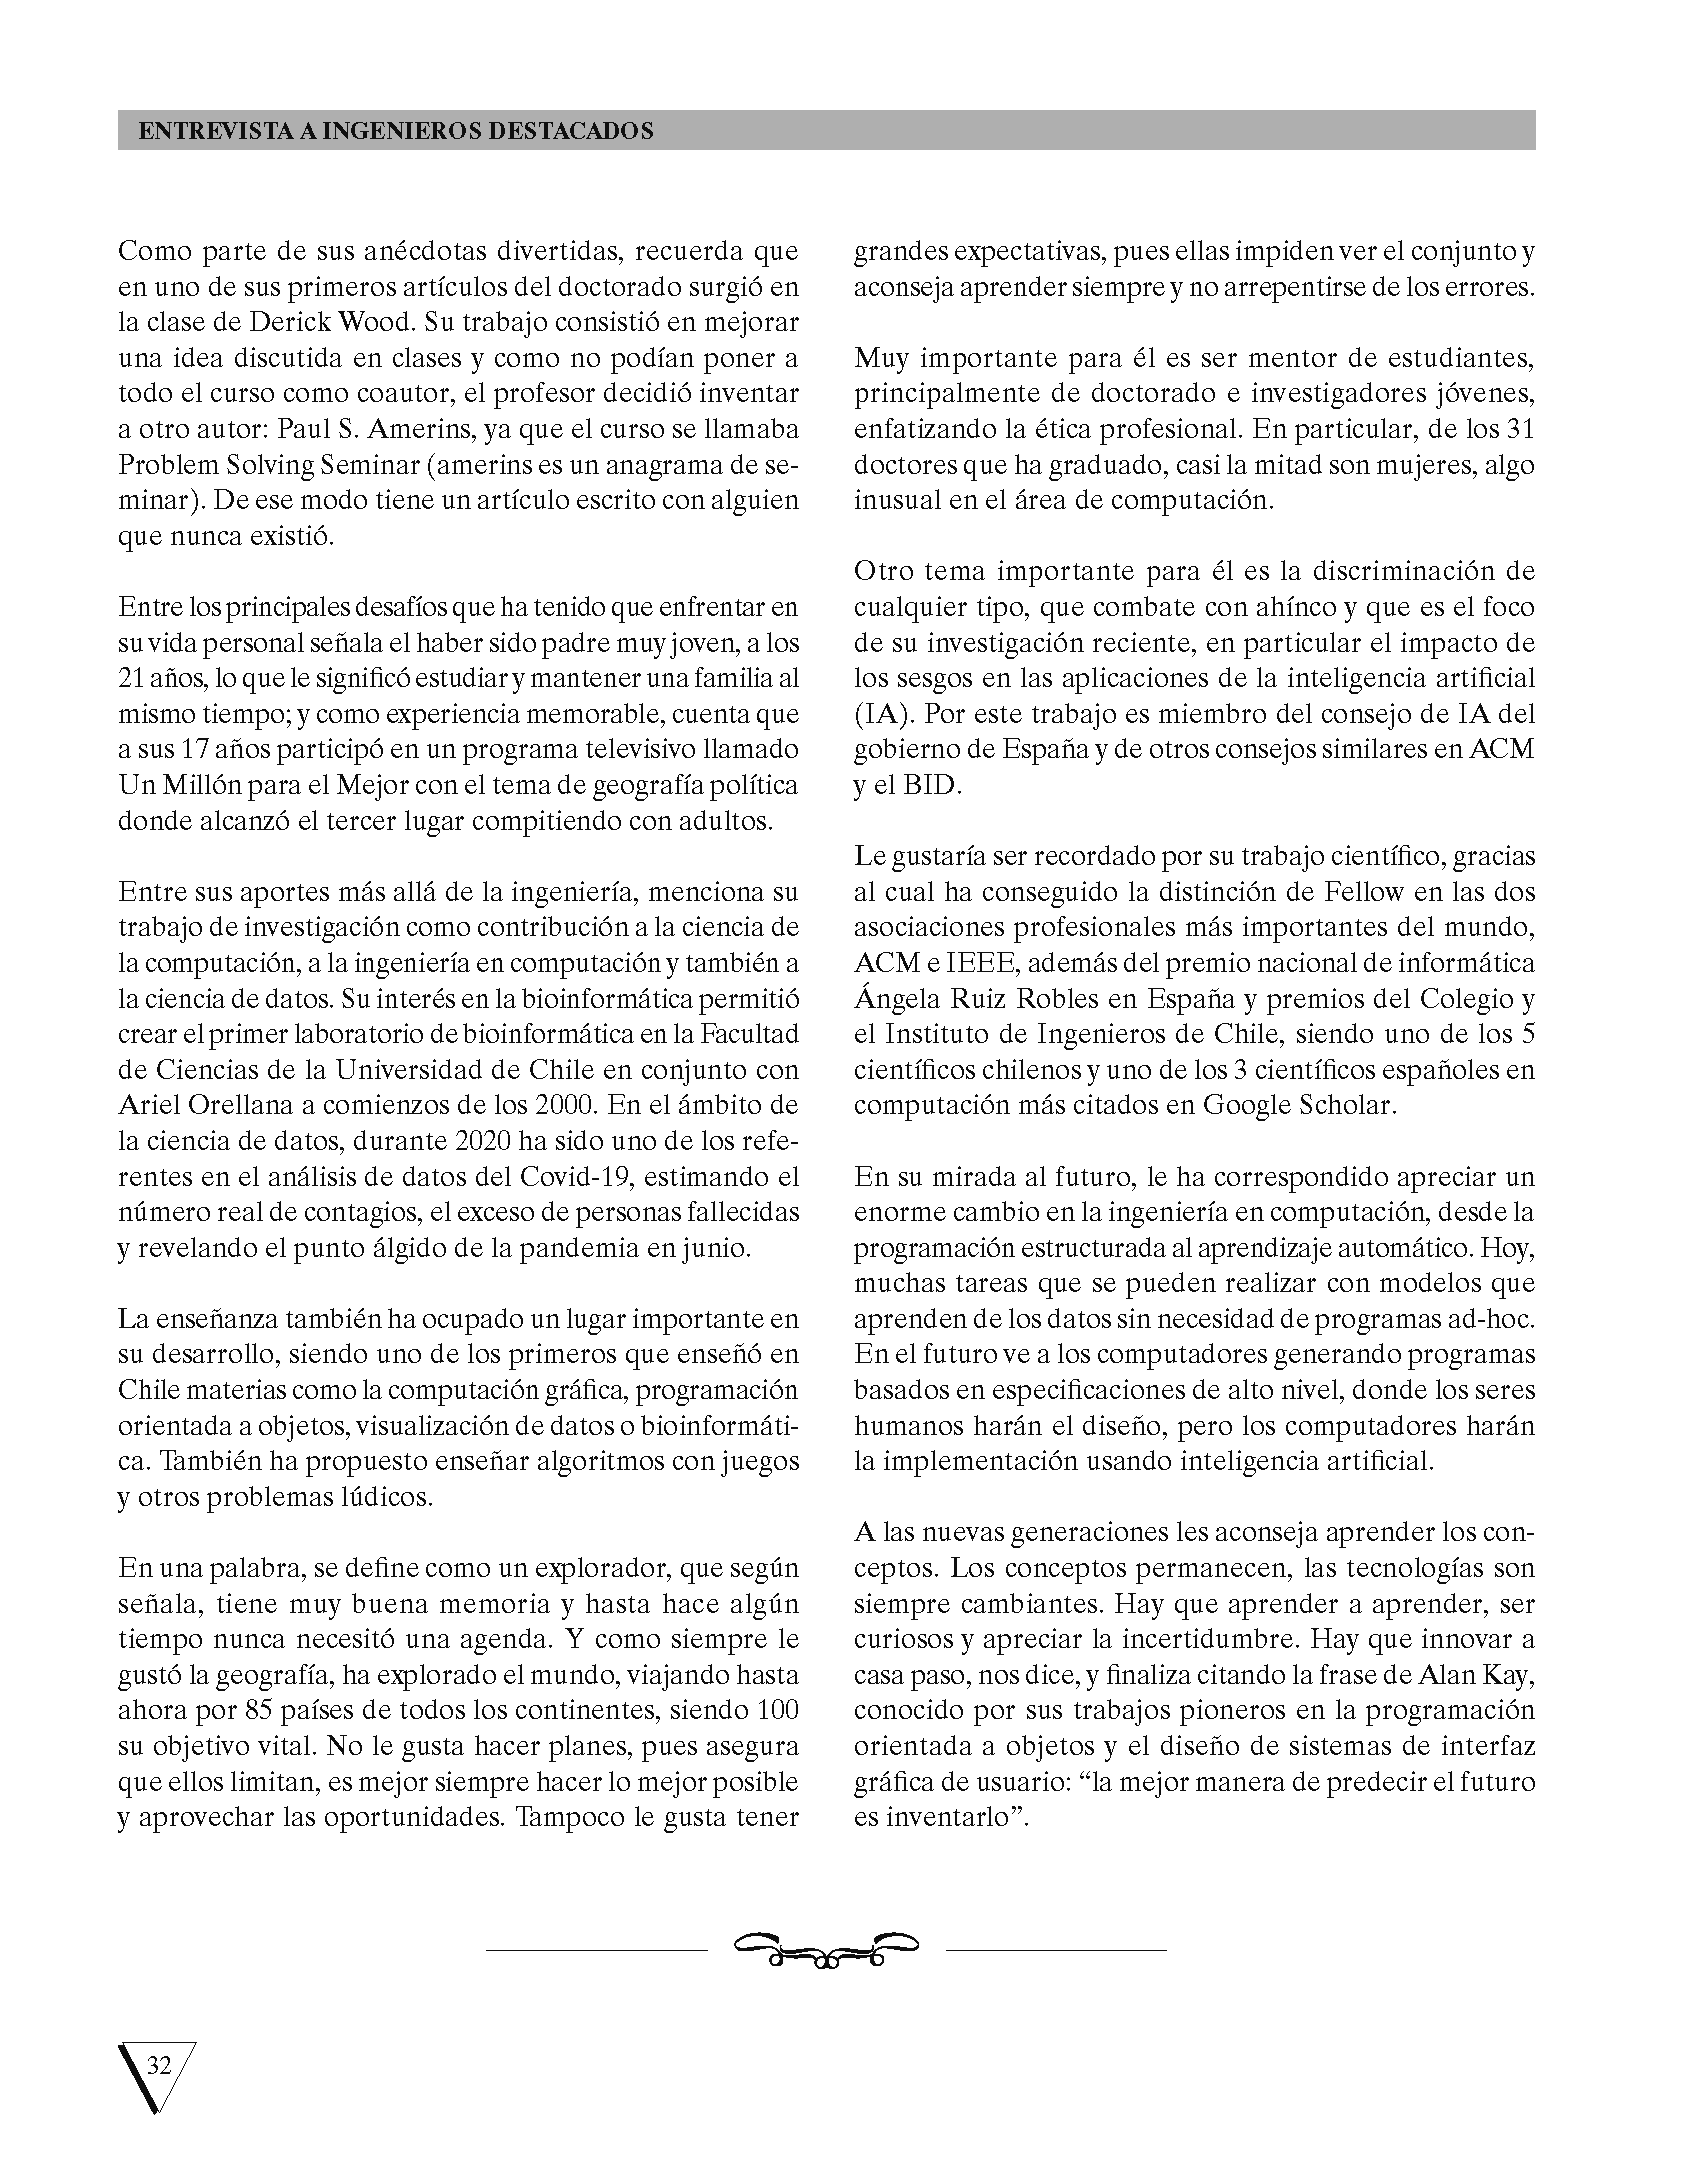 Revista_Anales_490-agosto de 2020 DEF_Página_34.png